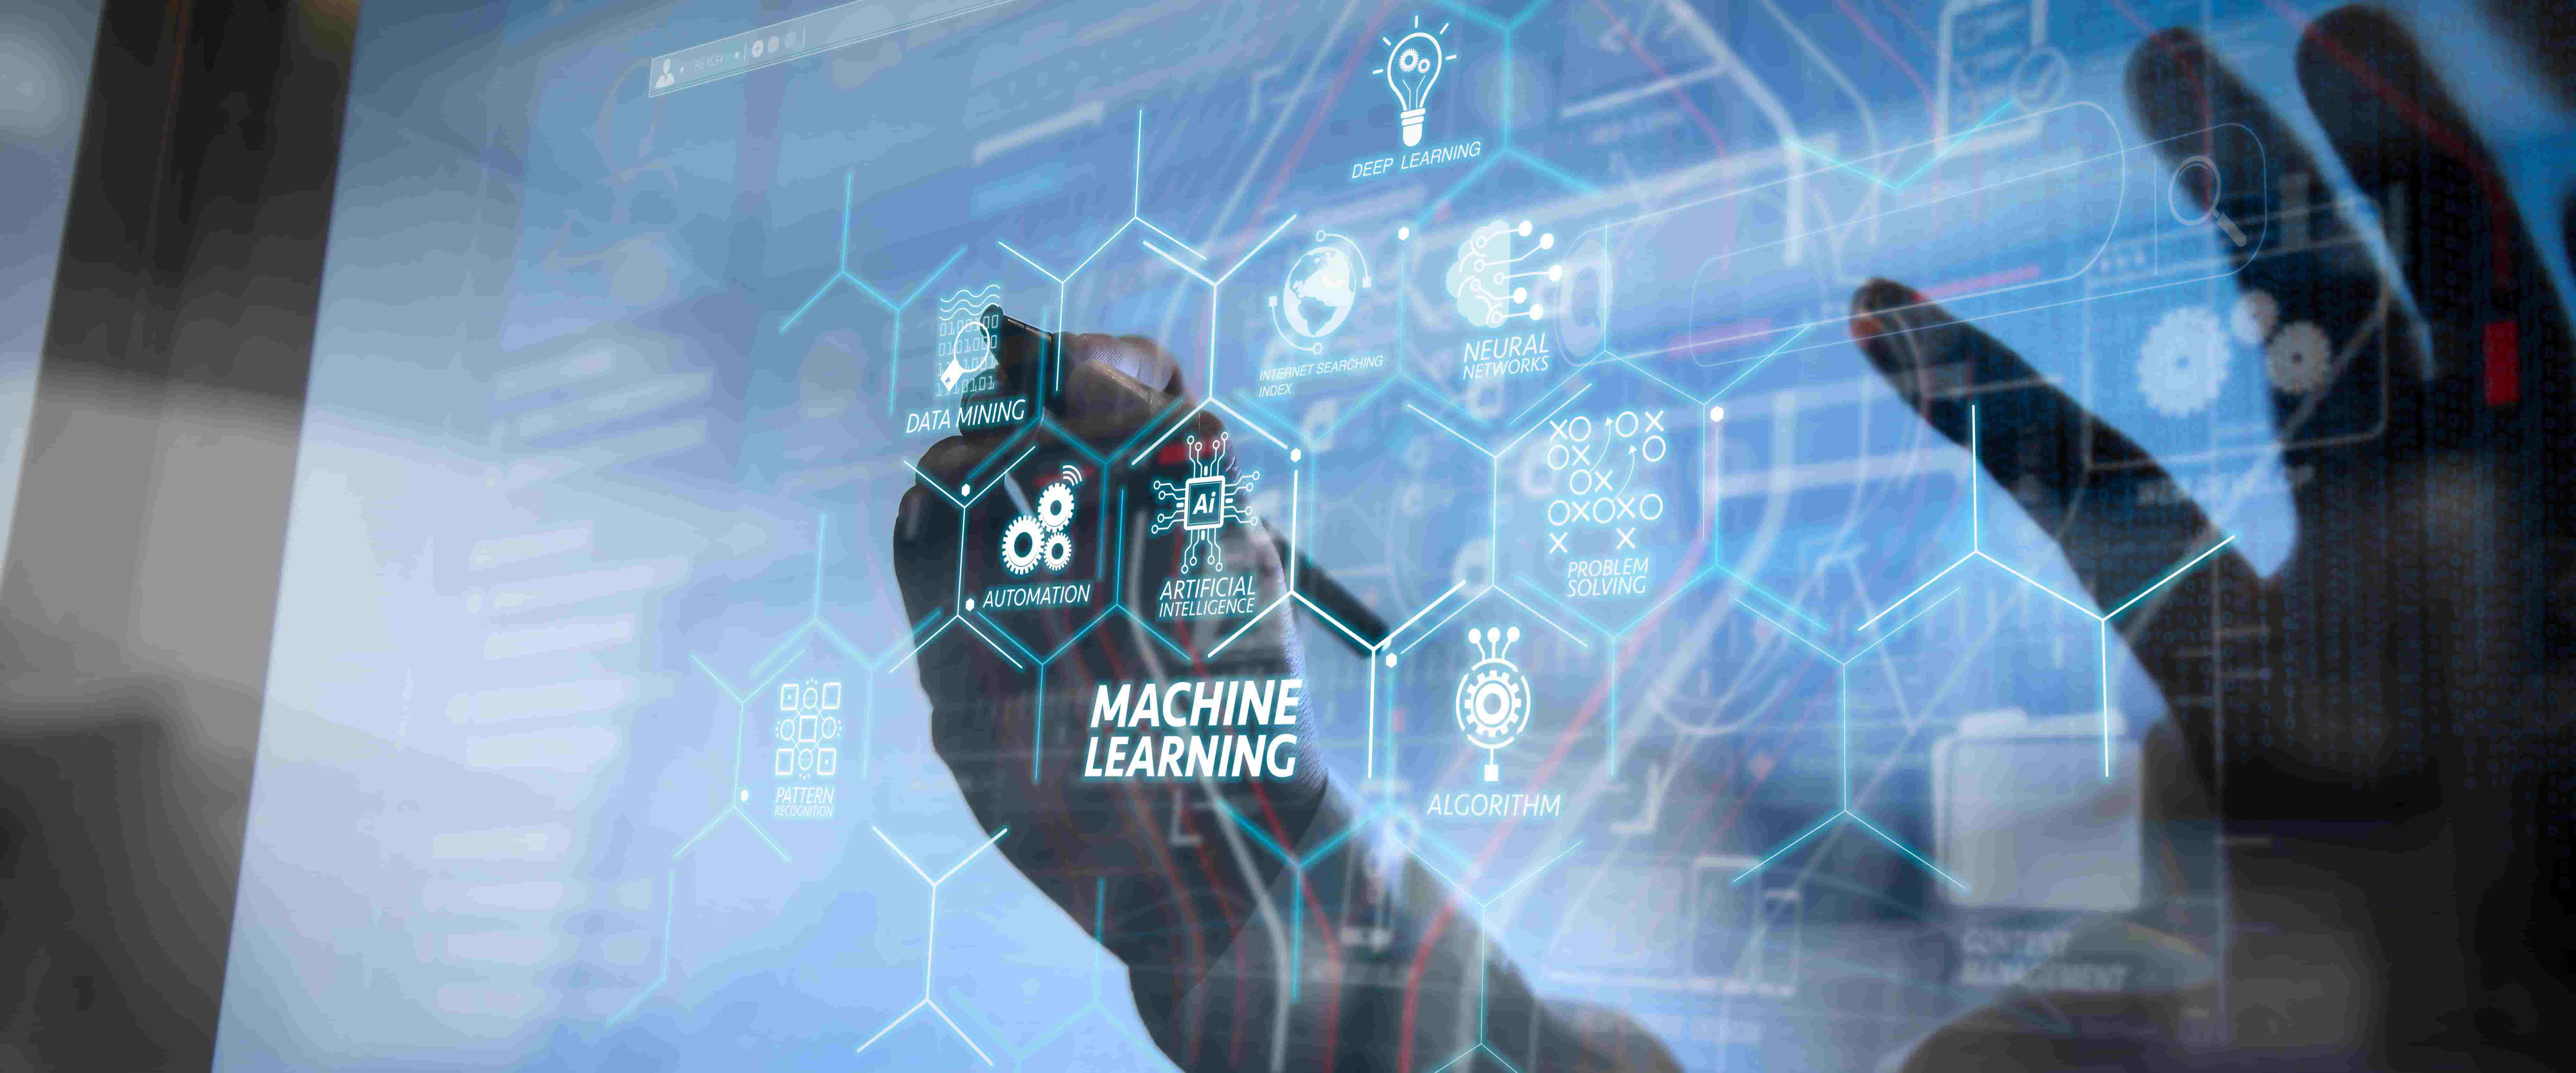 图片展示了一只手在触摸充满术语的透明屏幕，如“Machine Learning”“Algorithm”，体现了现代科技和人工智能的主题。